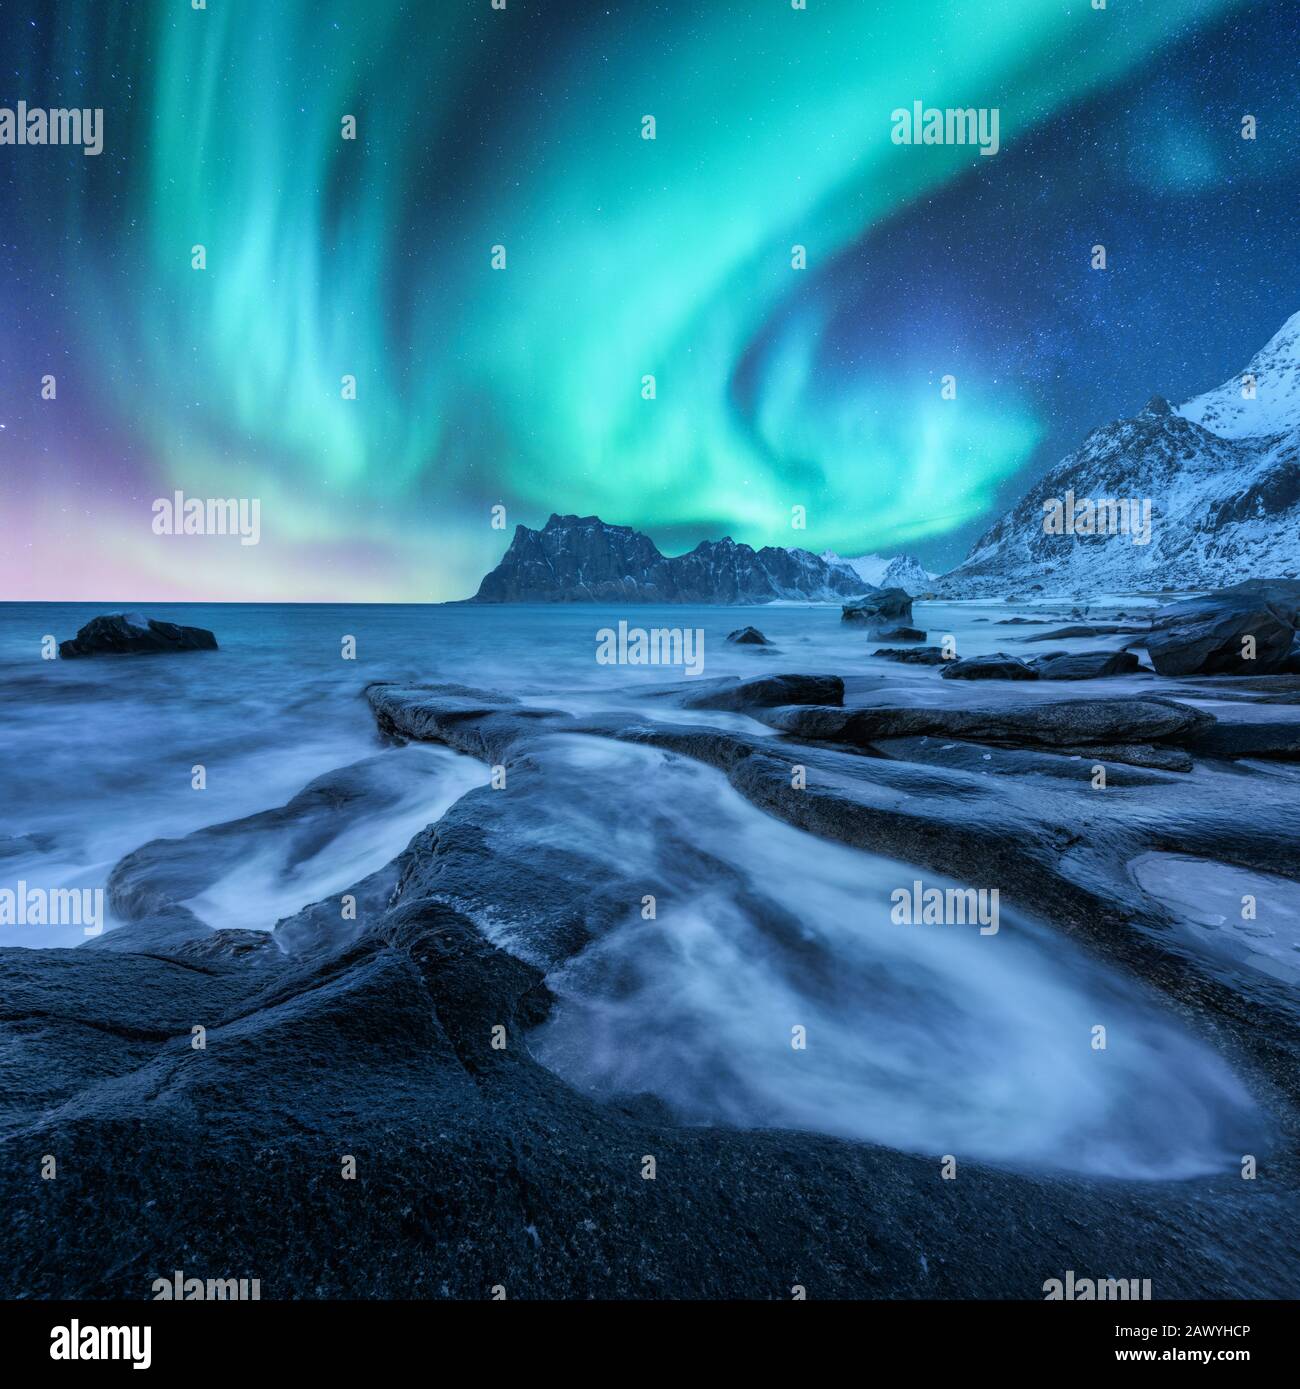 Aurora borealis, snowy mountain and sandy beach with stones Stock Photo